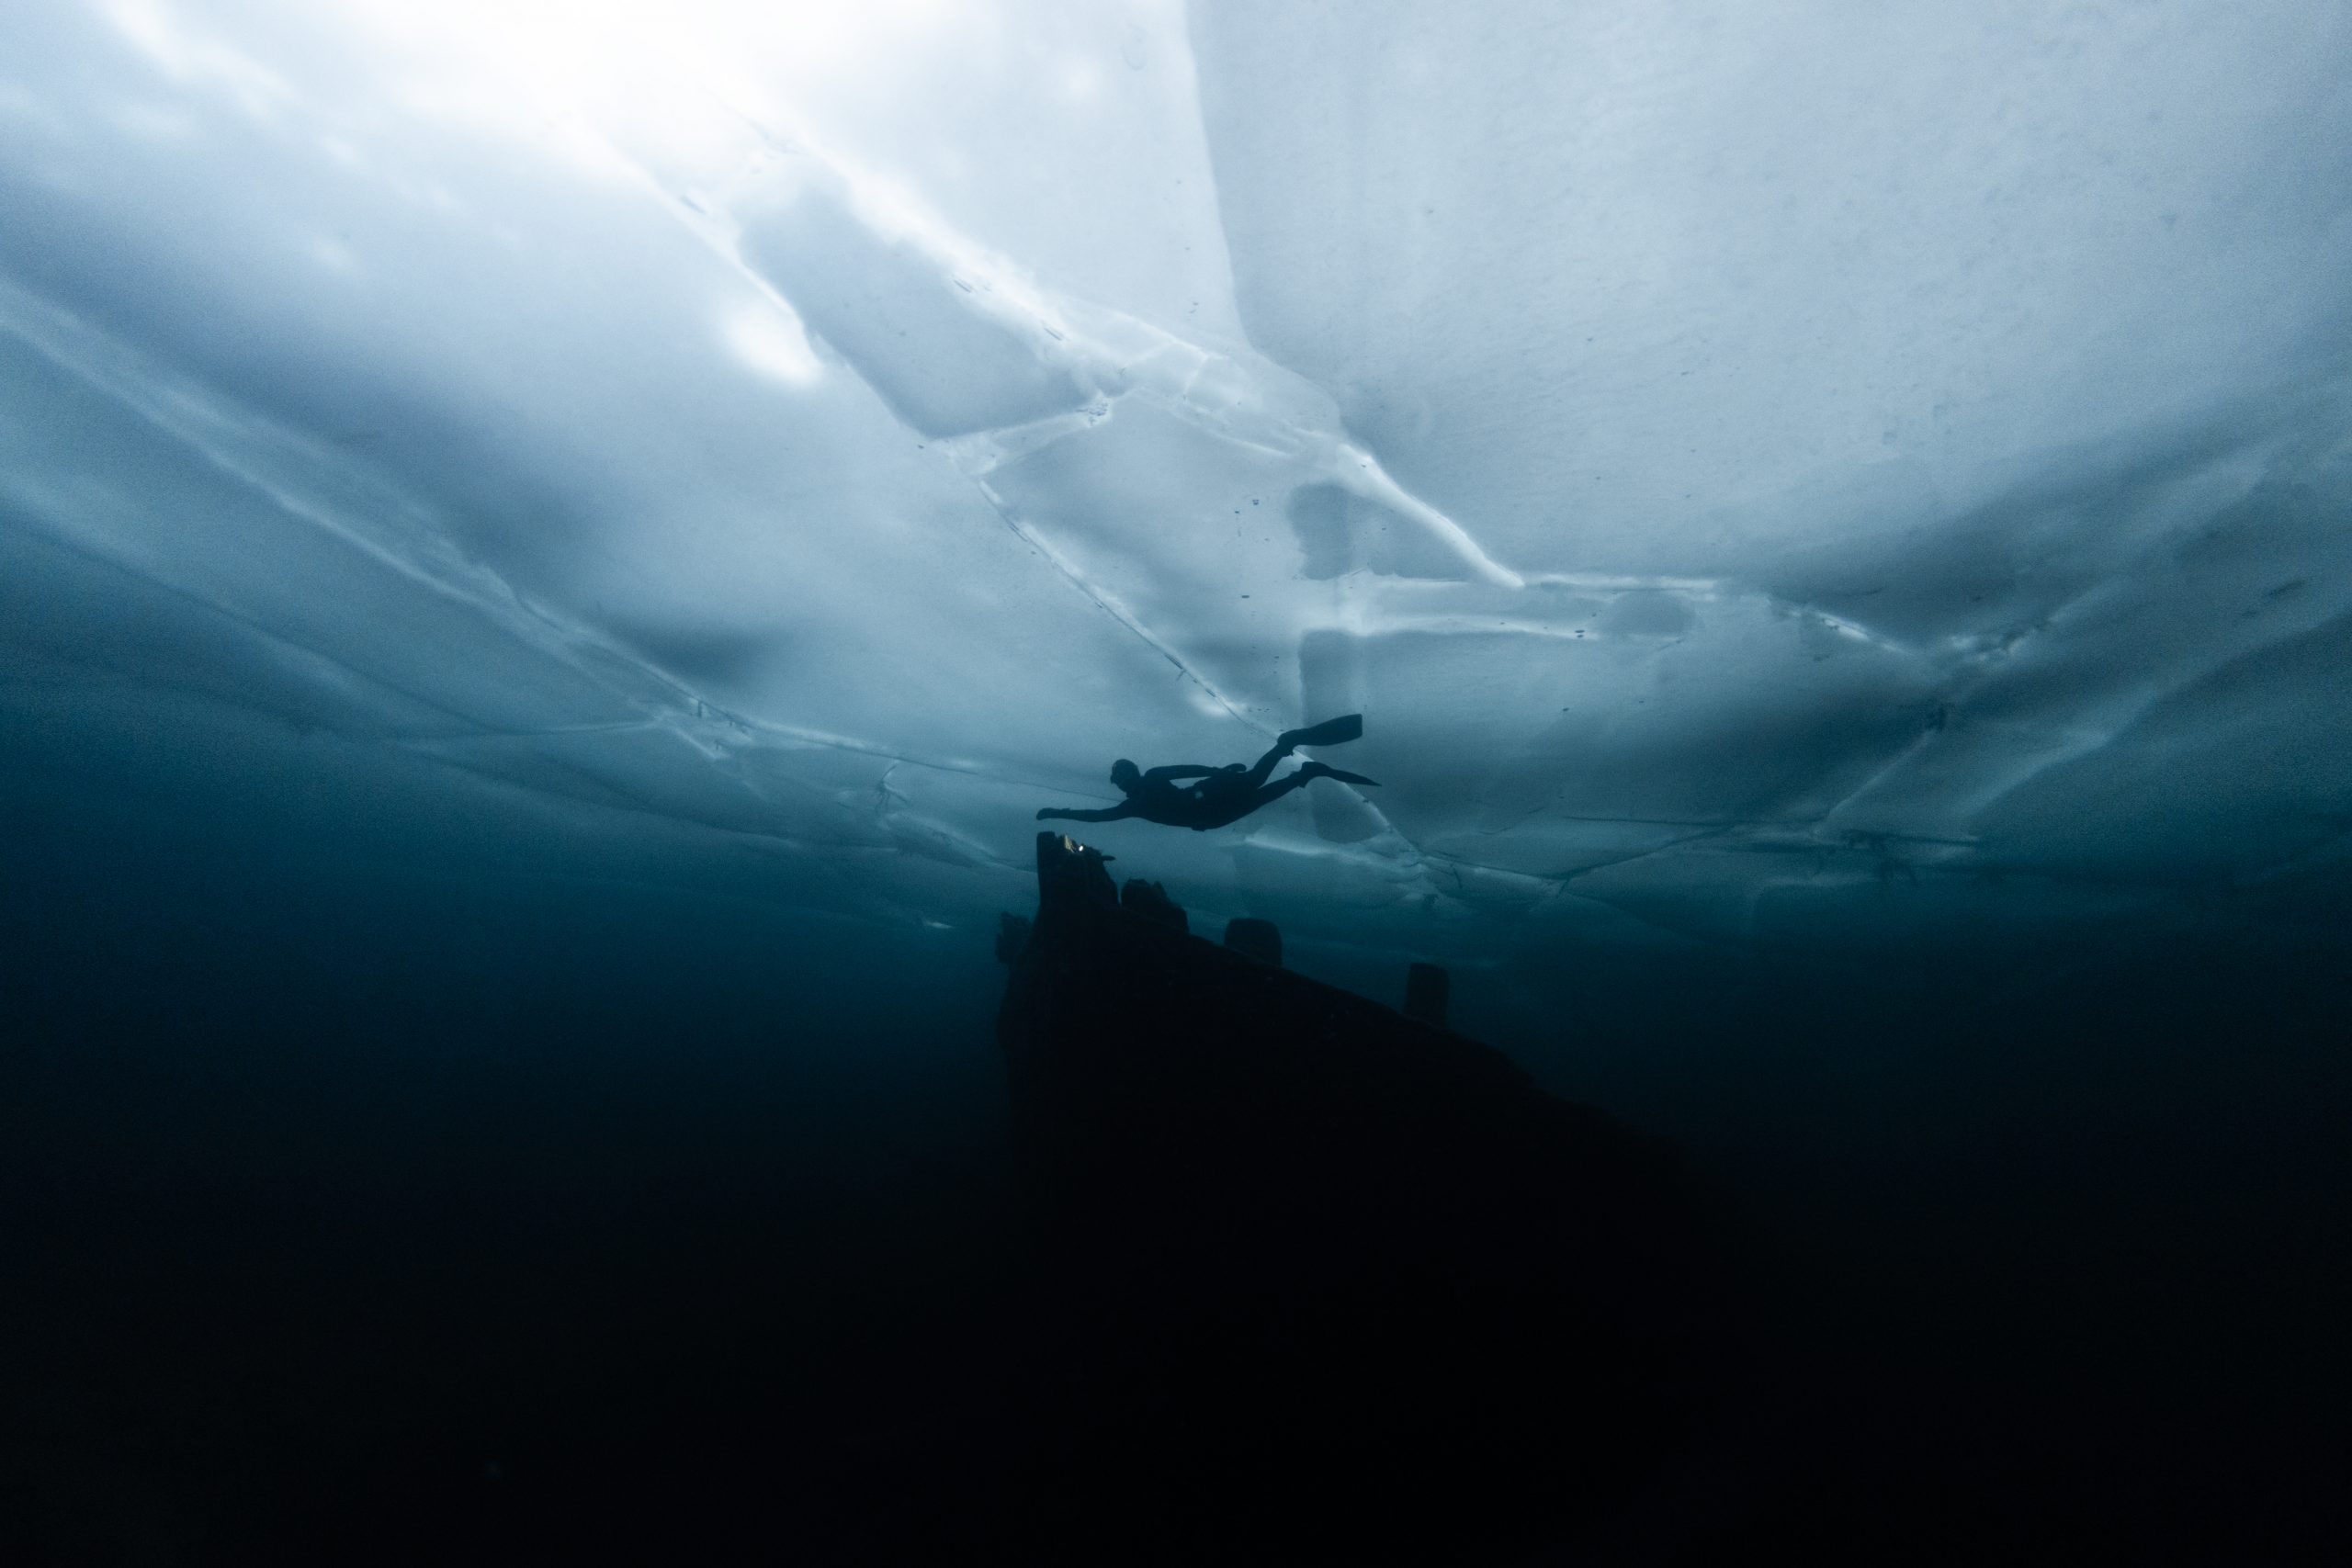 Silhouette en apnée sous glace au-dessus d'un bateau immergé